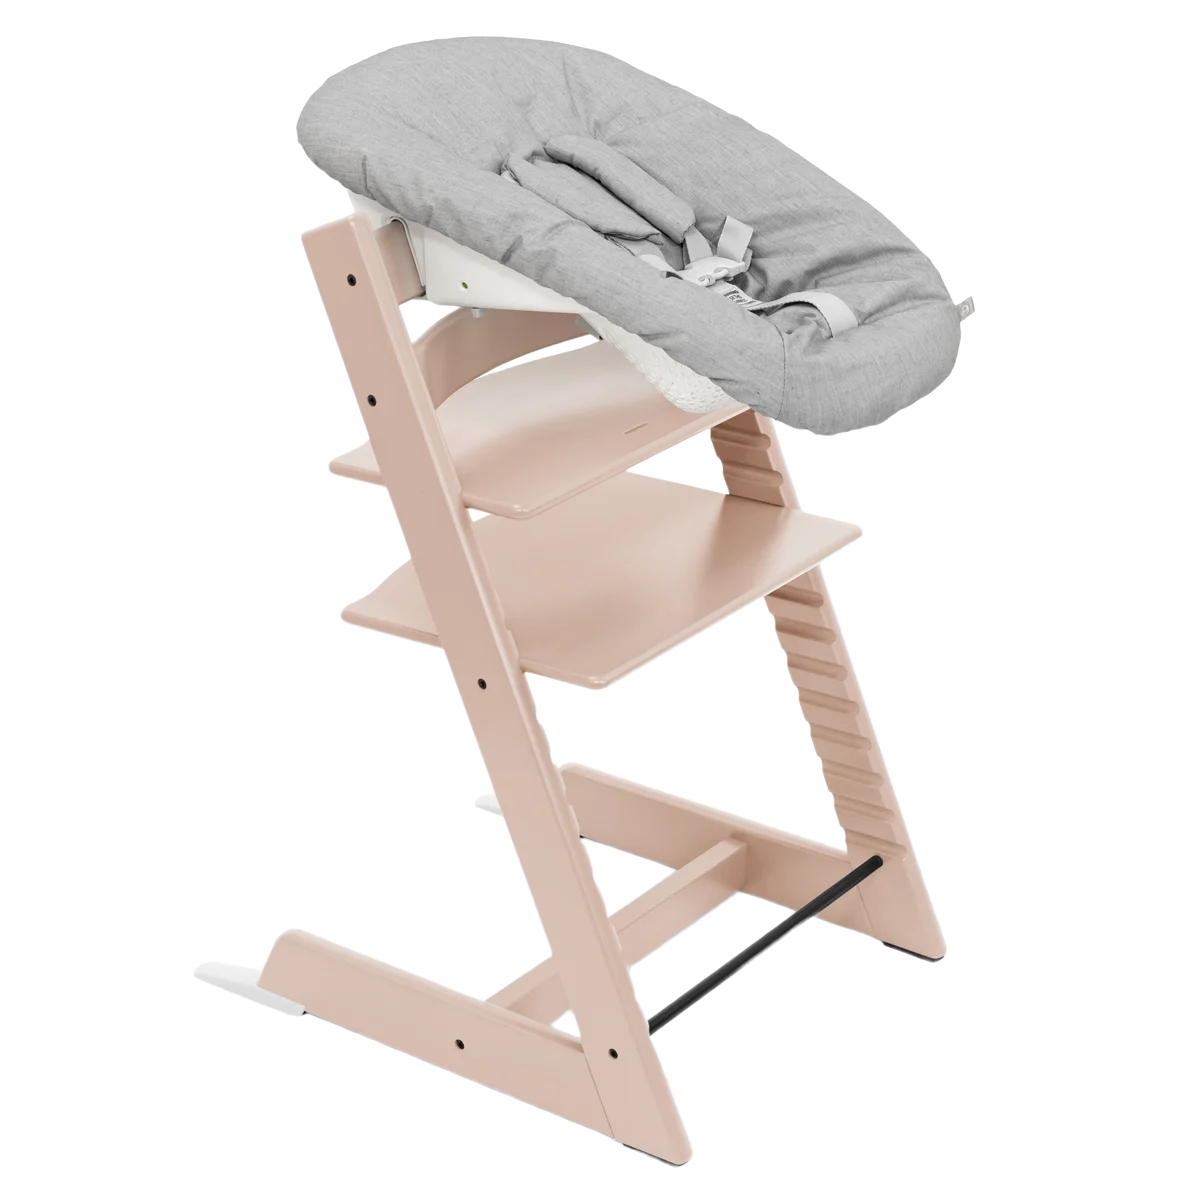 Набор Stokke Newborn Tripp Trapp Serene Pink: стульчик и кресло для новорожденных (k.100134.52) - фото 1